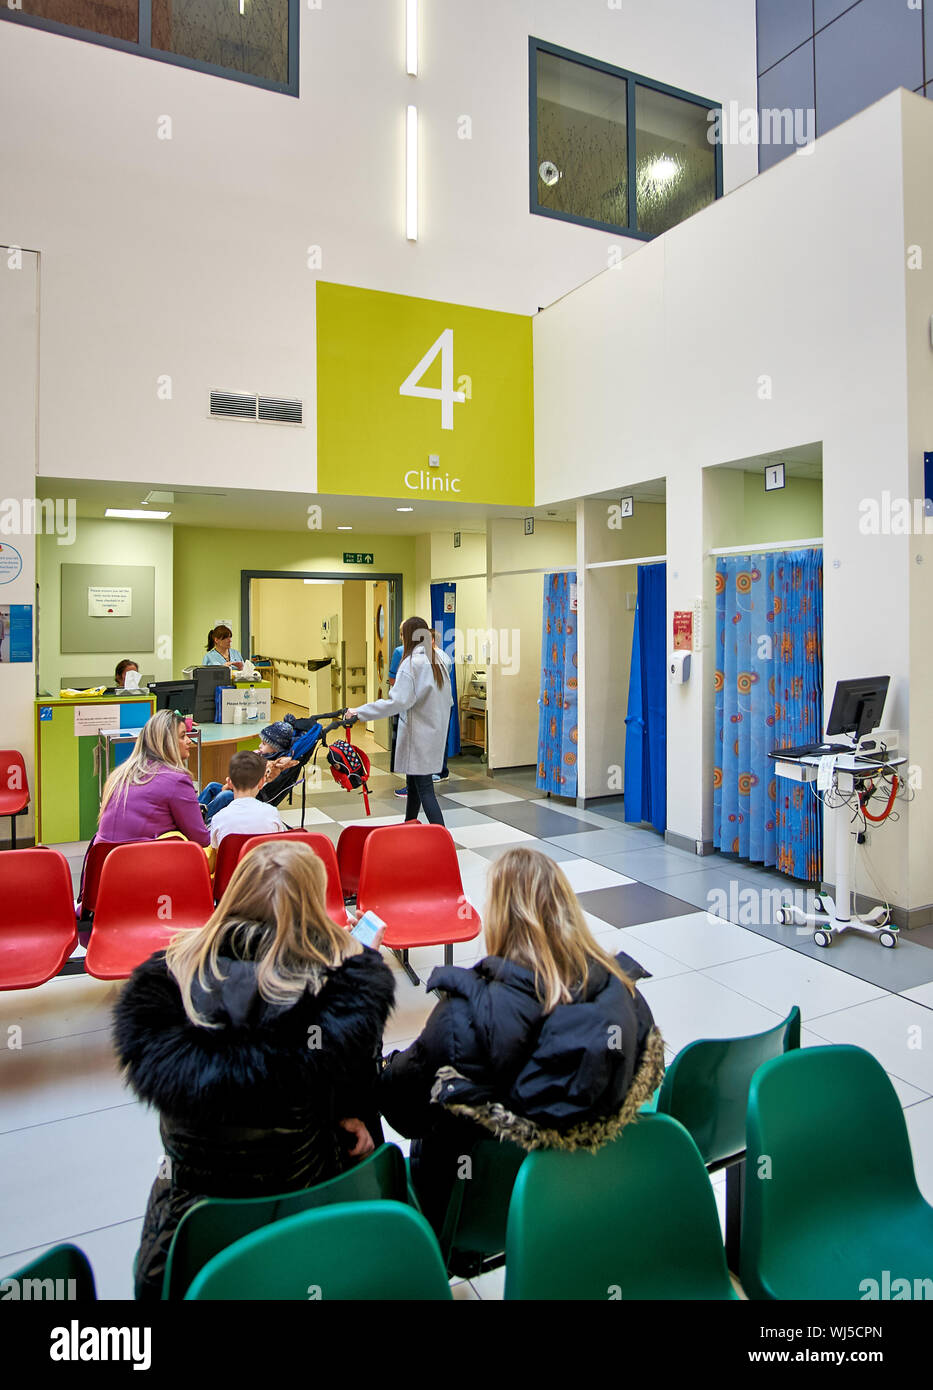 Intérieur de la NHS Royal Queen Elizabeth Hospital for children à Glasgow, Ecosse, montrant des enfants et colorés. Banque D'Images